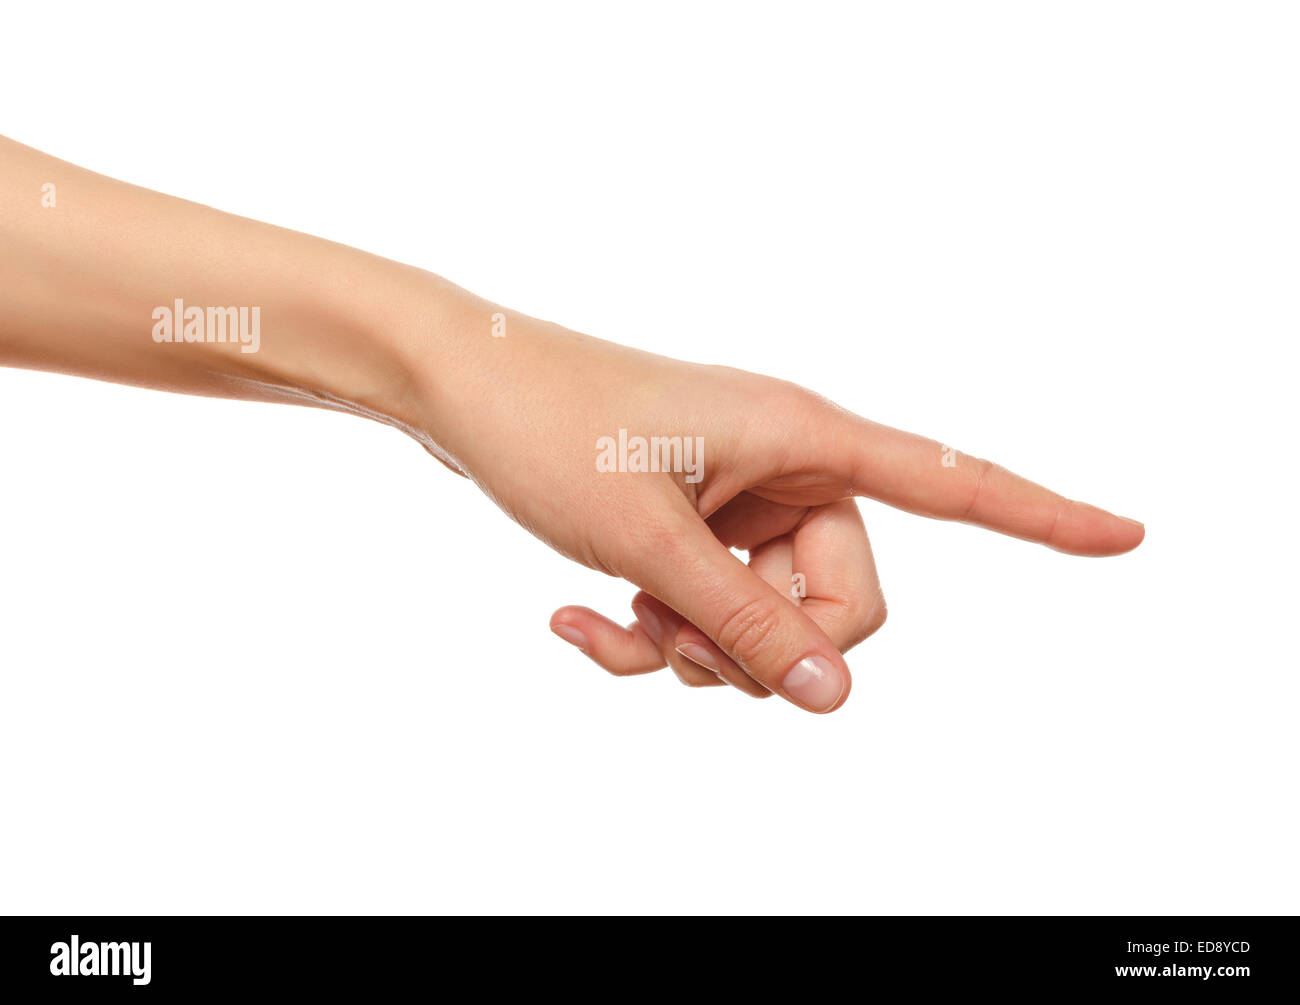 La main dans le geste du toucher, pousser, indiquant Banque D'Images